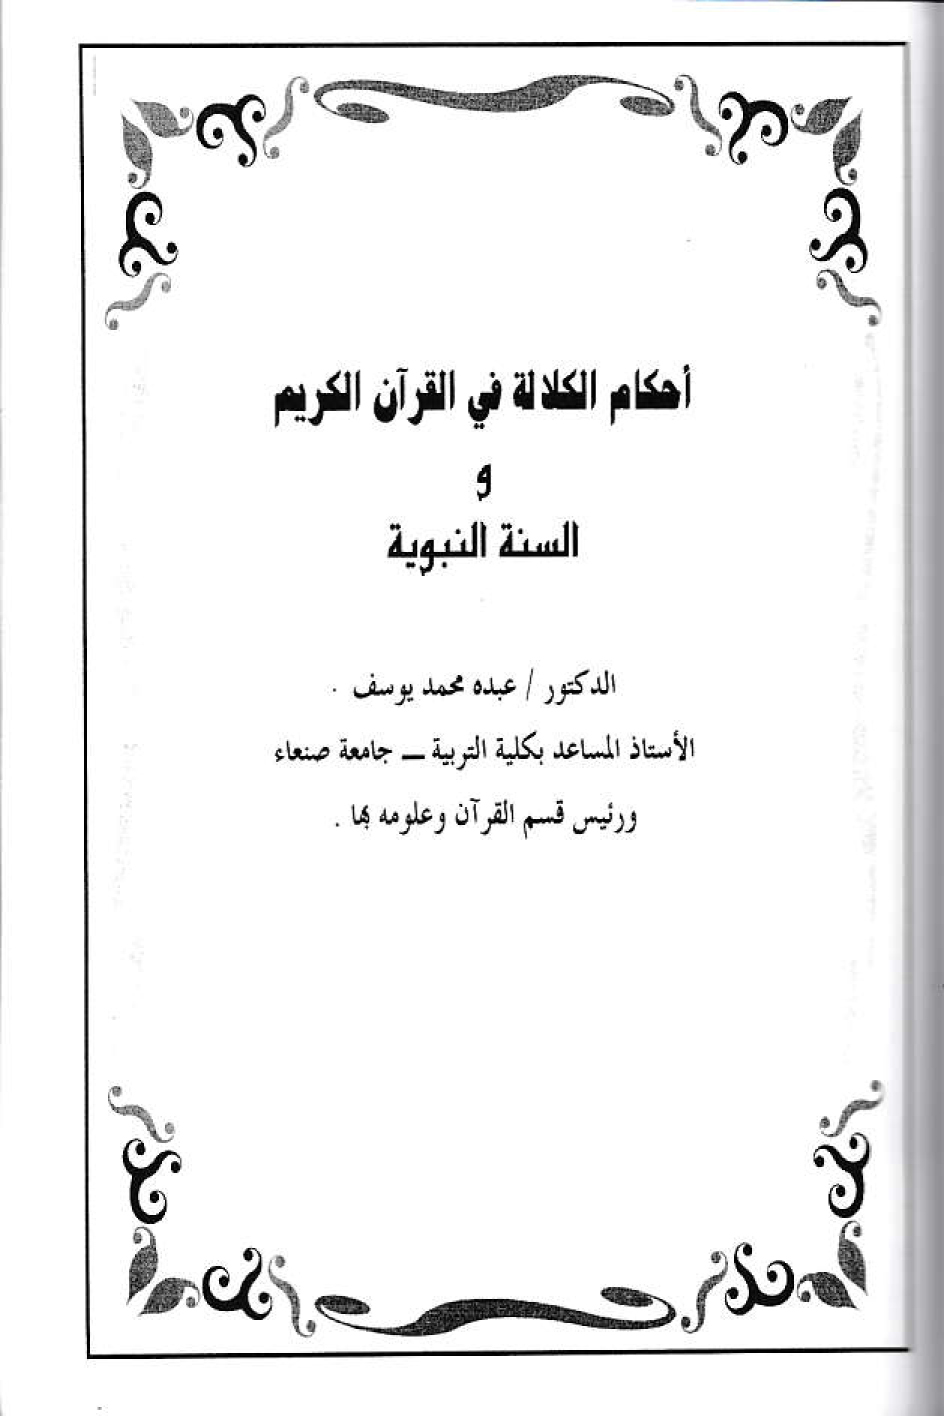 أحكام الكلالة في القرآن الكريم والسنة النبوية د. عبده محمد يوسف